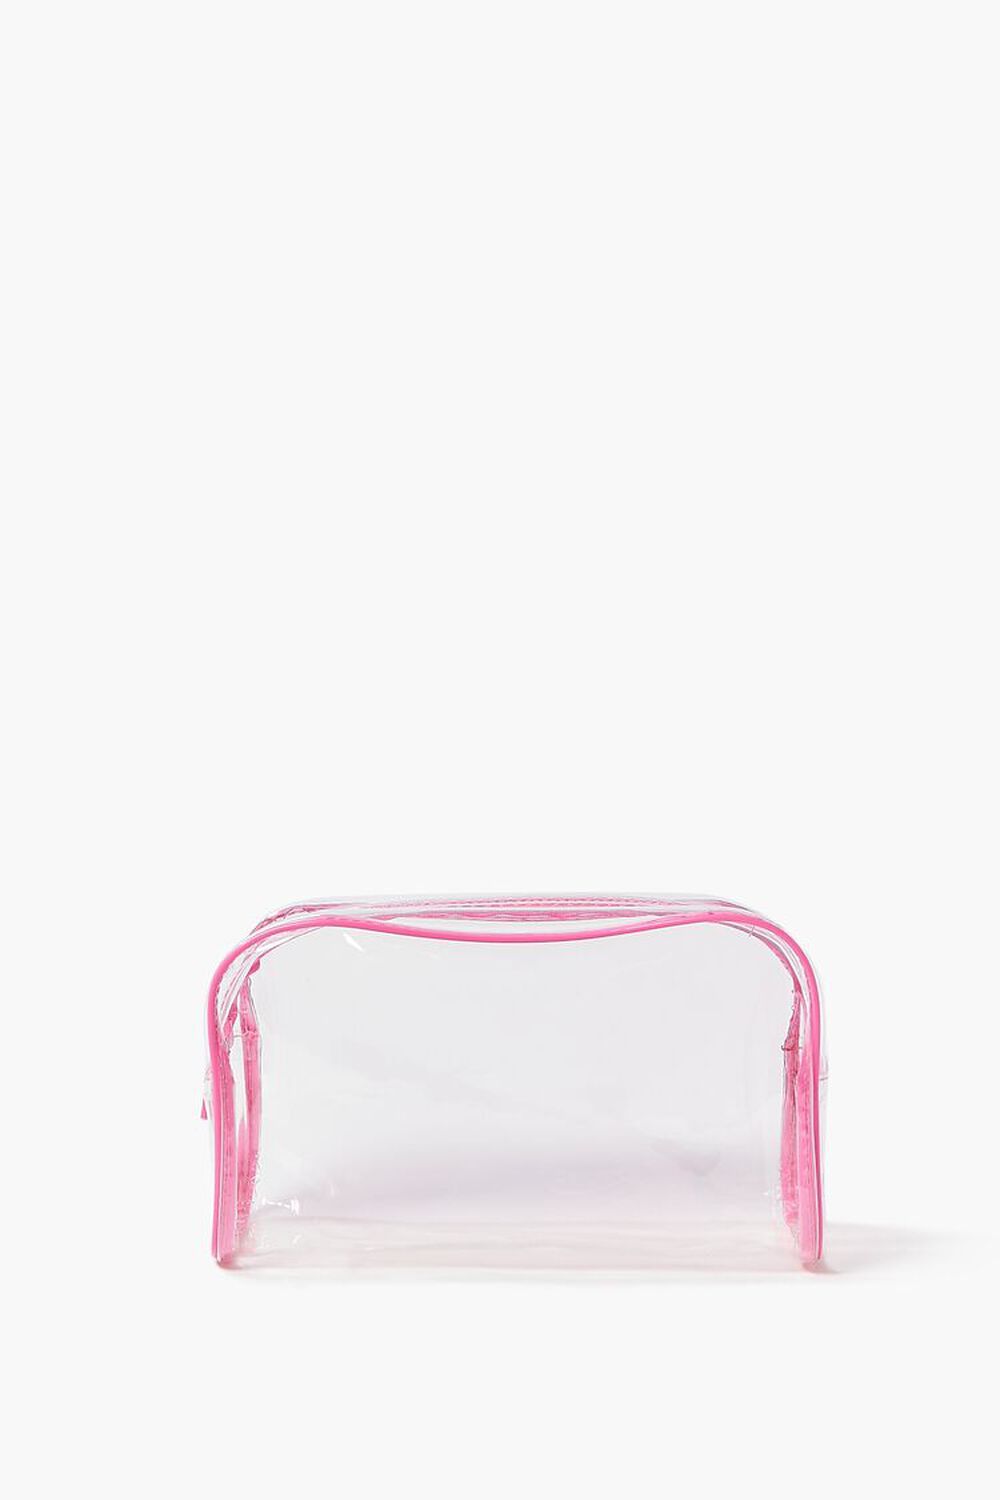 PINK/CLEAR Makeup Bag & Travel Bottle Set, image 1